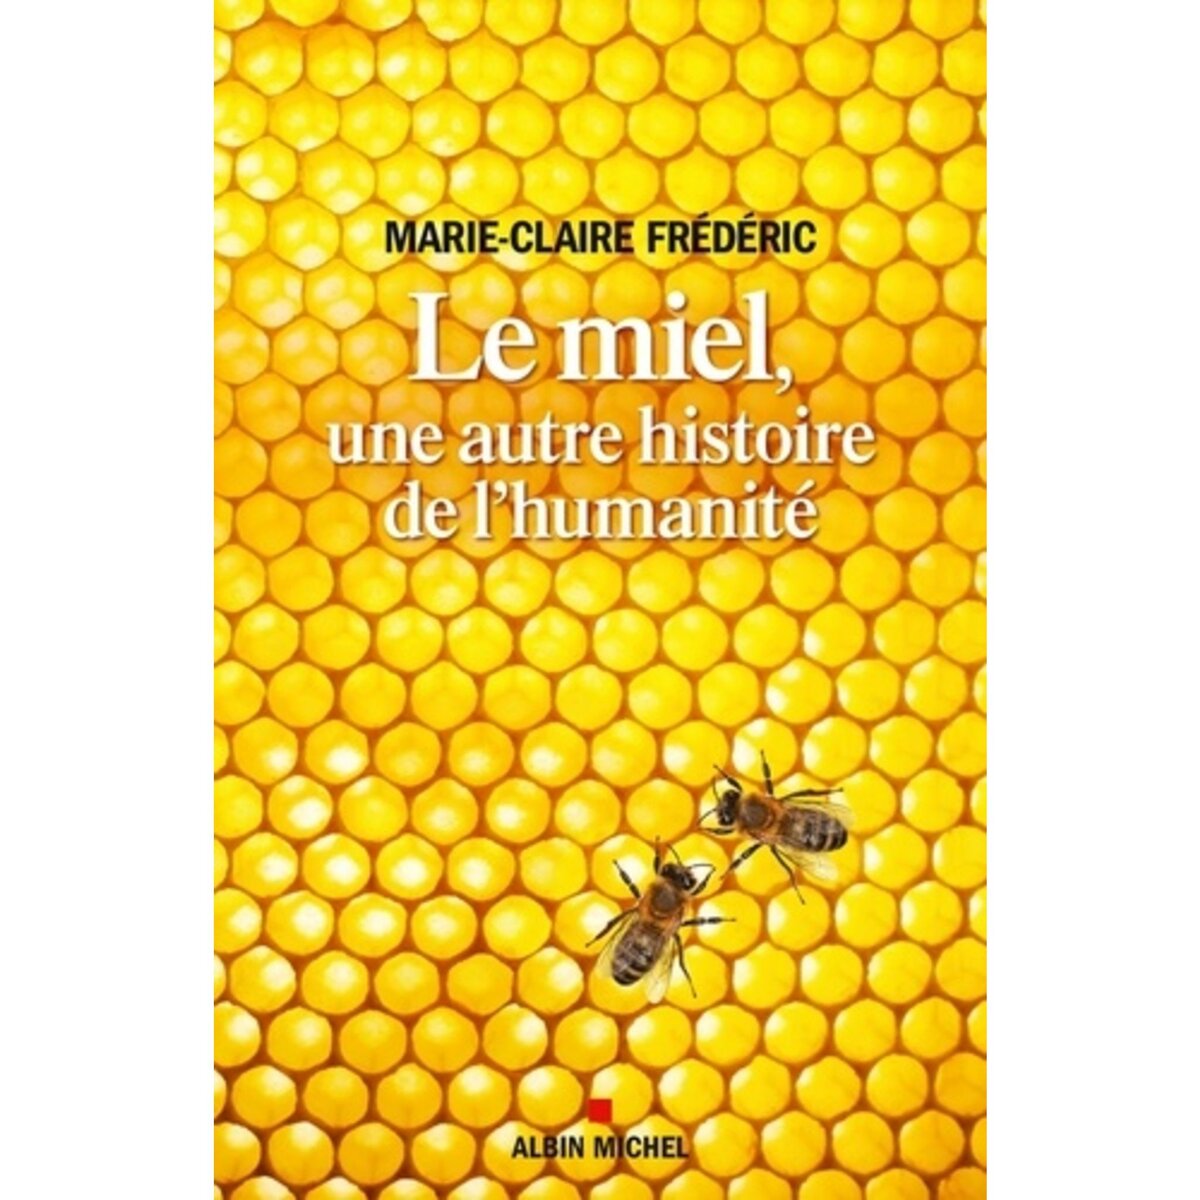  LE MIEL, UNE AUTRE HISTOIRE DE L'HUMANITE, Frédéric Marie-Claire